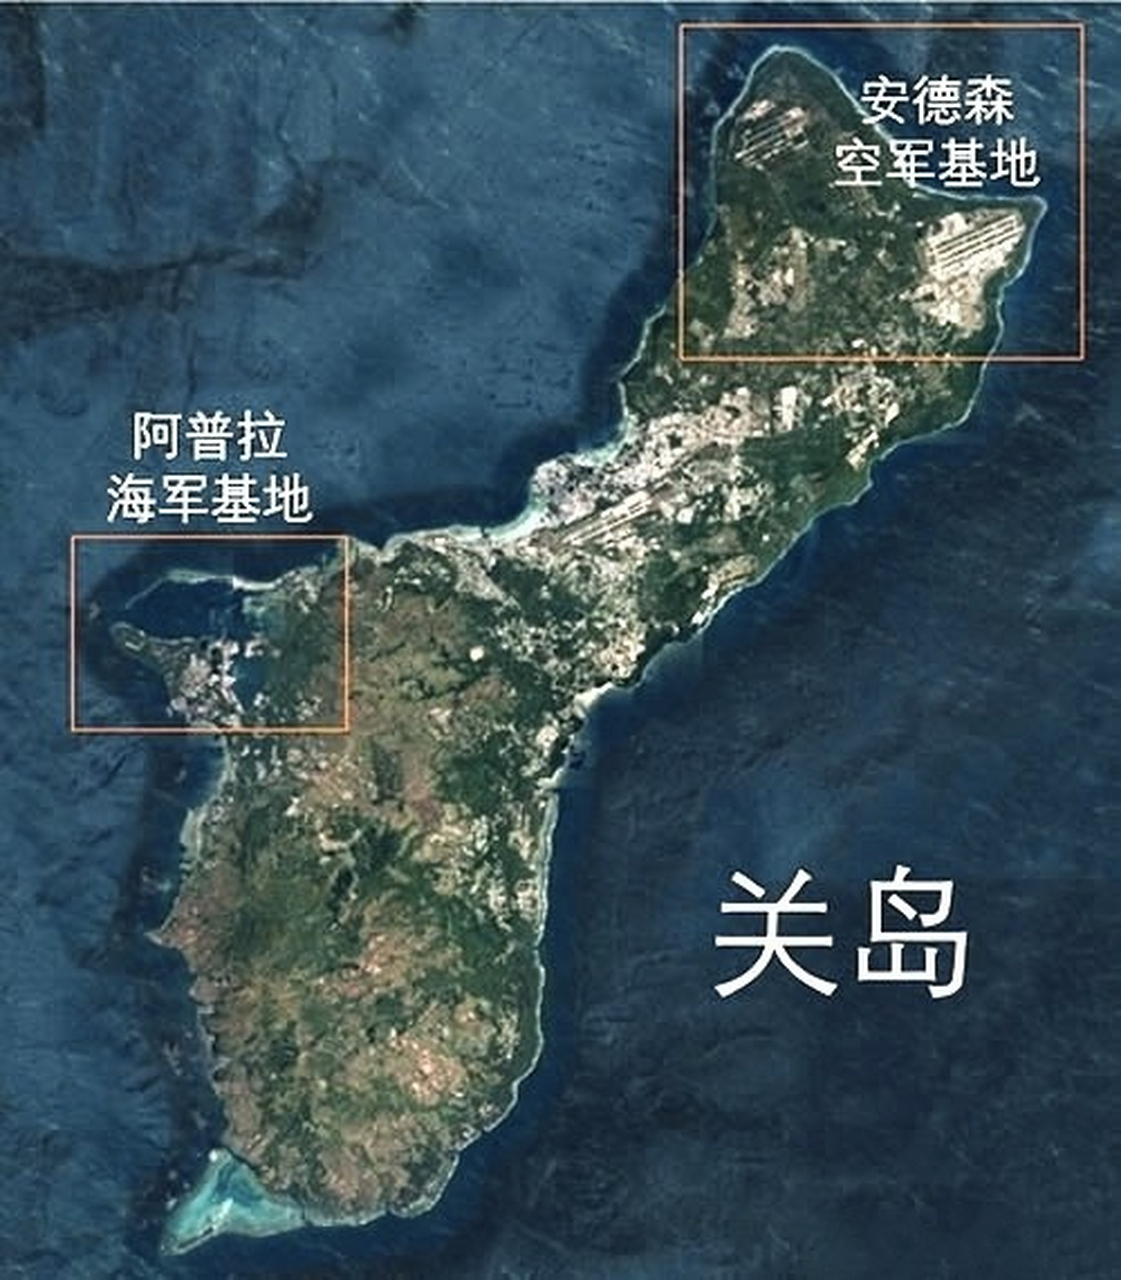 关岛地图 中文版图片